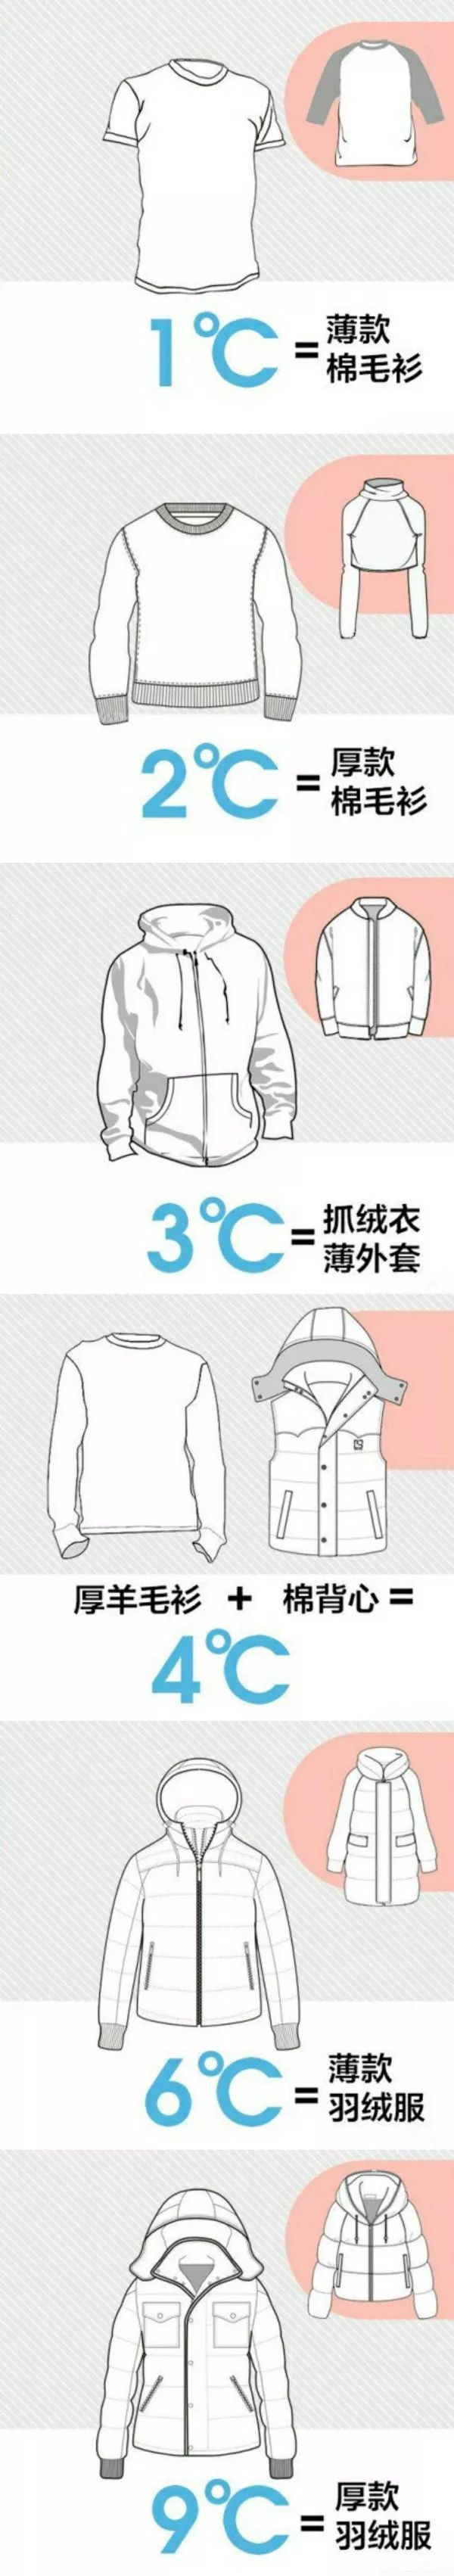 衣服可以增加的温度